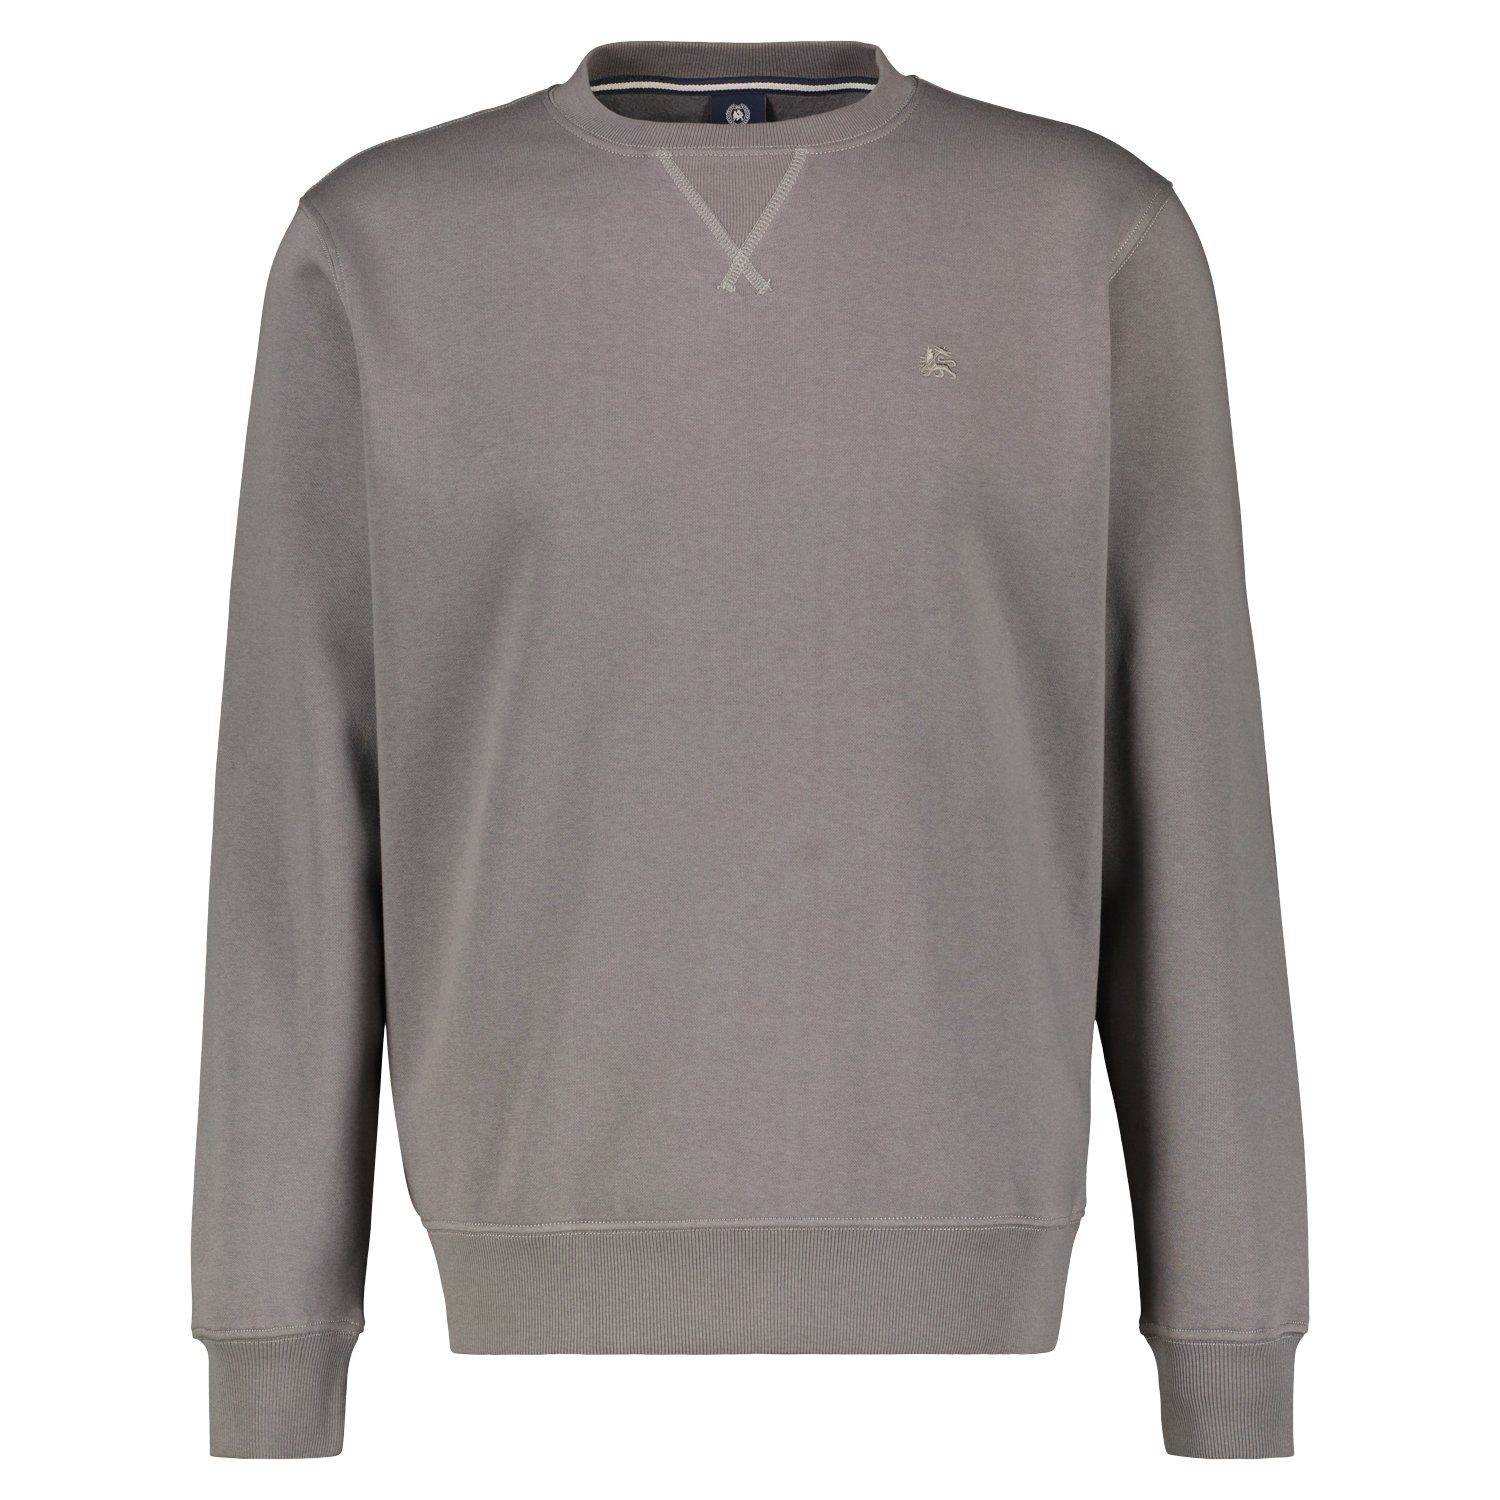 LERROS Sweatshirt in wertiger Strukturqualität basalt grey